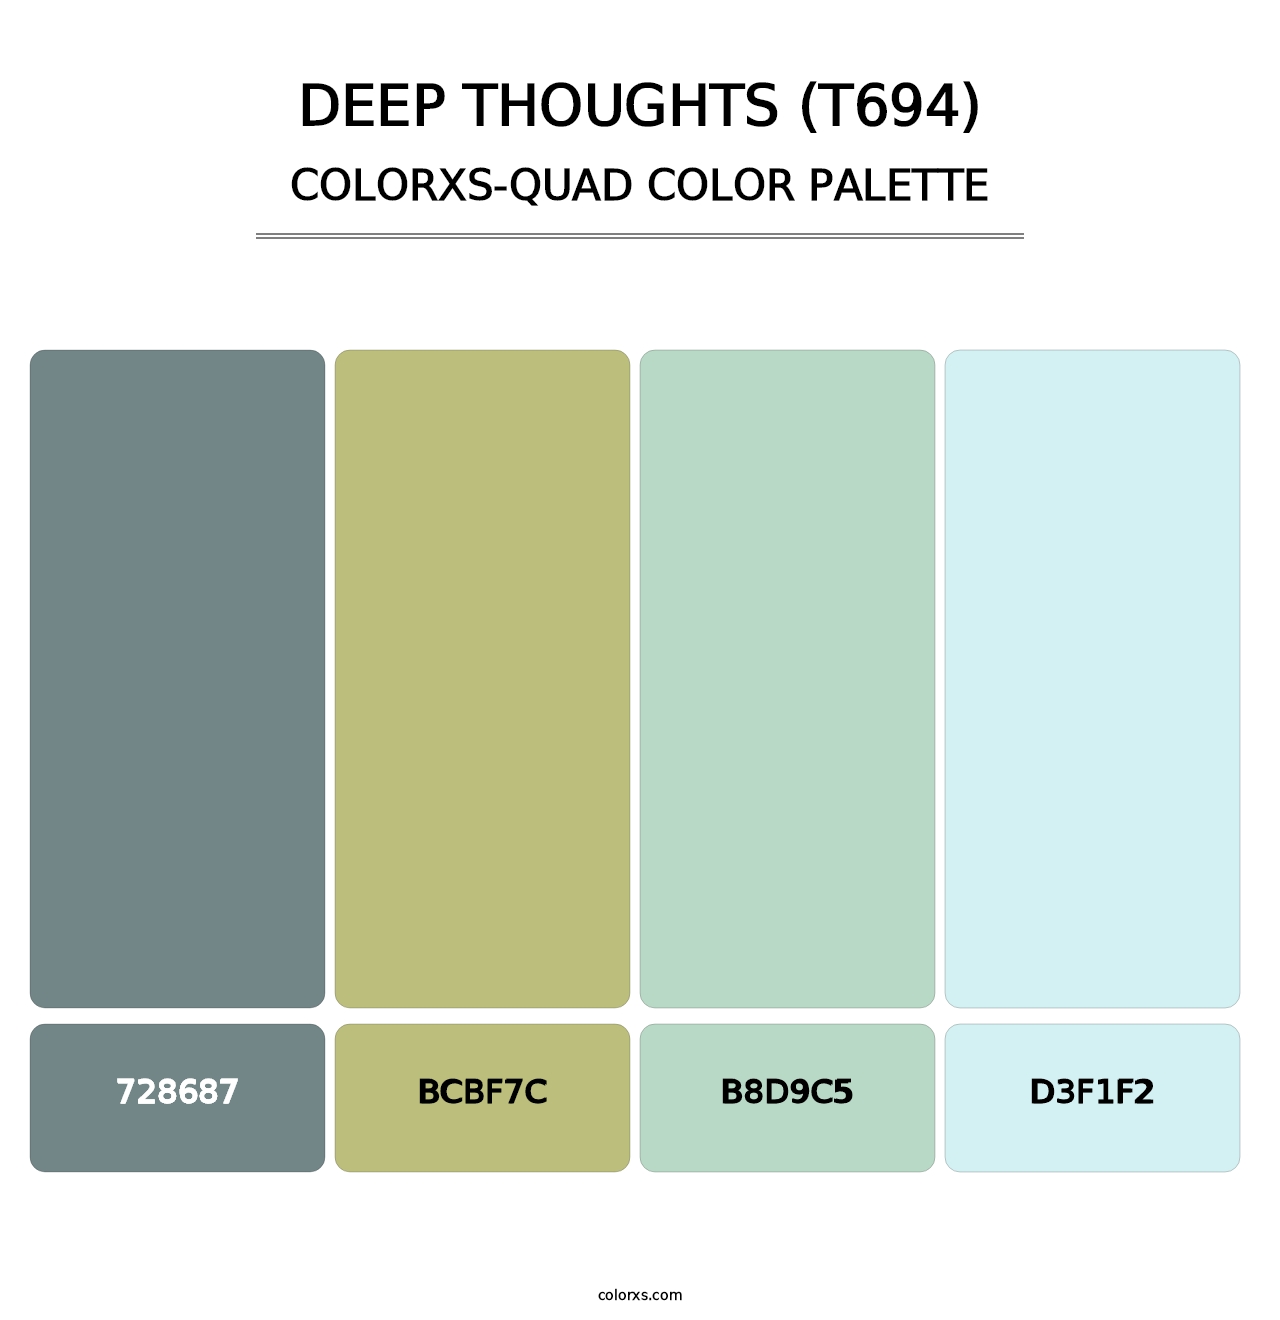 Deep Thoughts (T694) - Colorxs Quad Palette